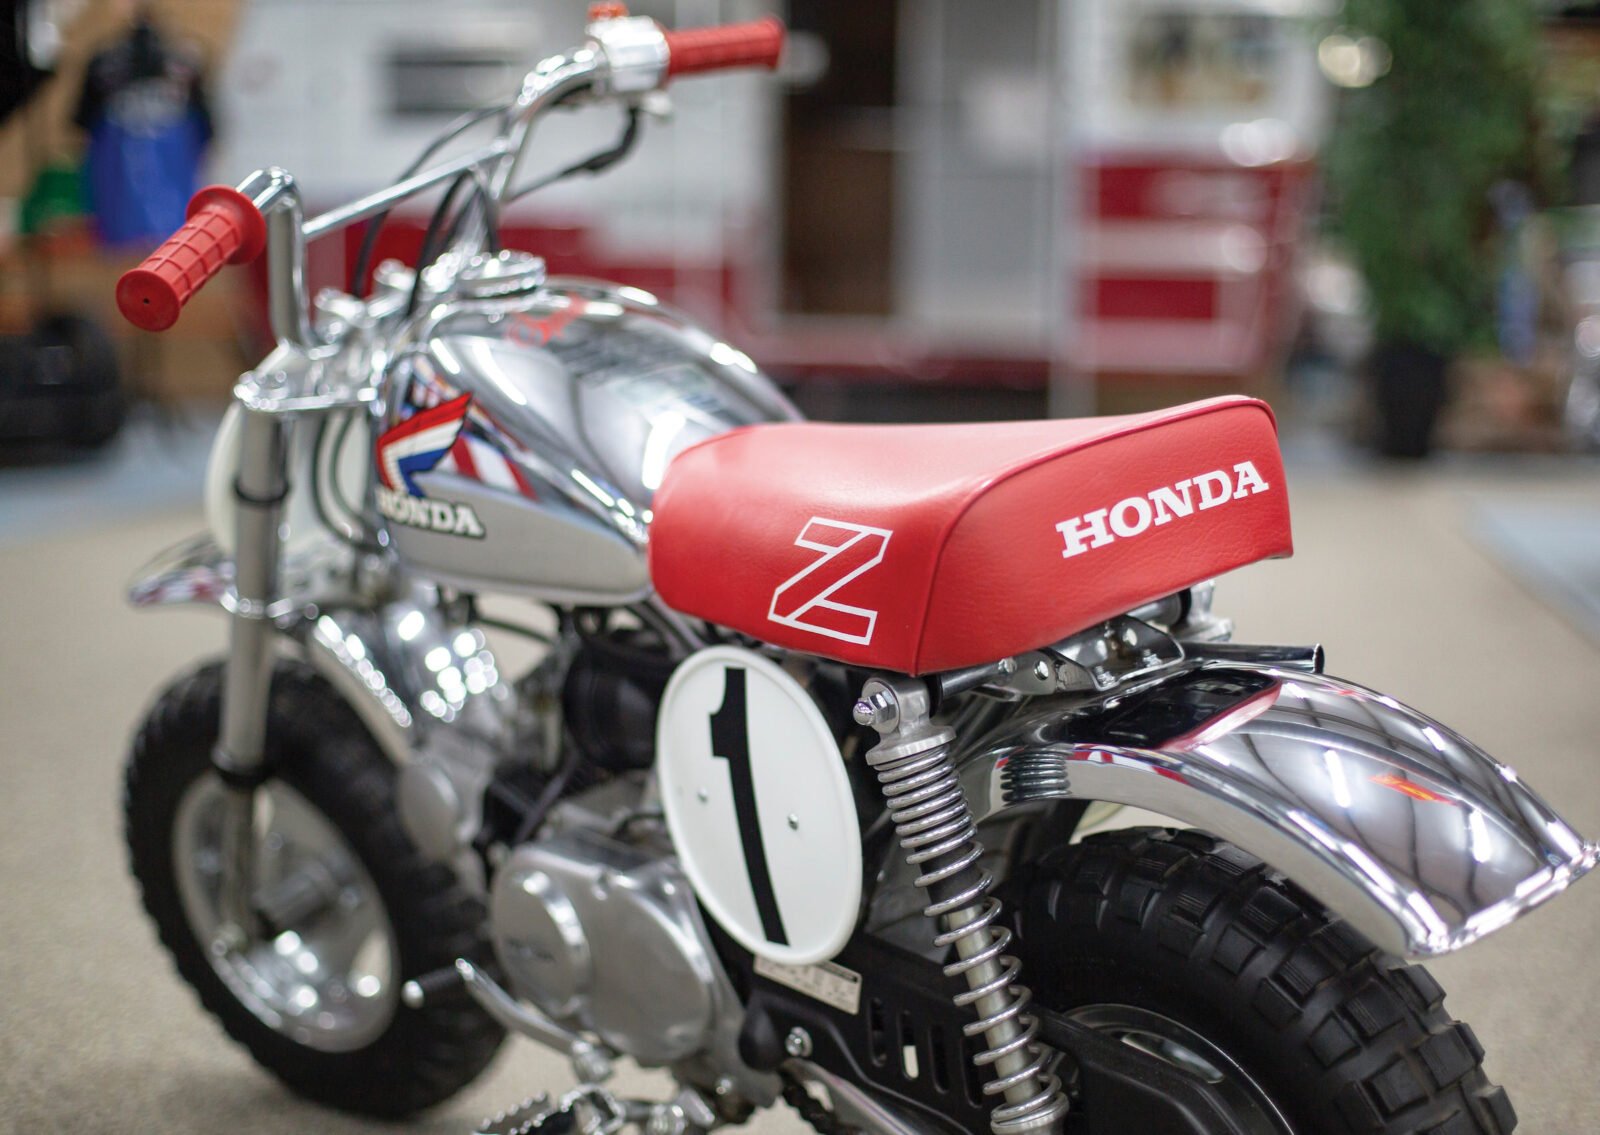 Honda Monkey Z50R - The Fastest Version Of The Original Monkey